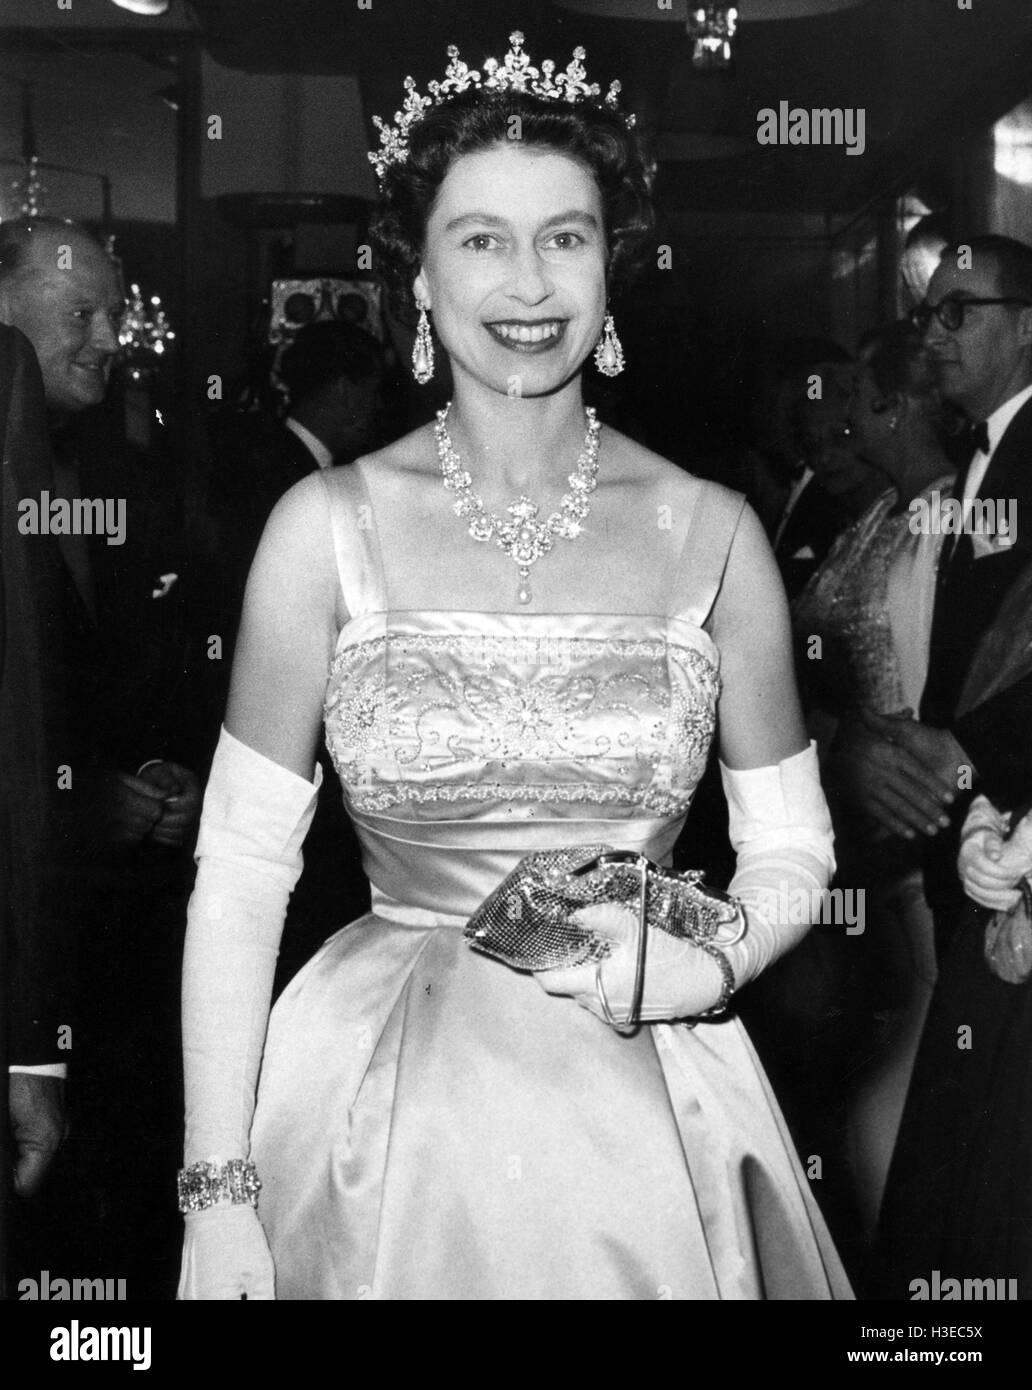 Königin ELIZABETH II. bei einer Filmpremiere von 1955 Stockfoto